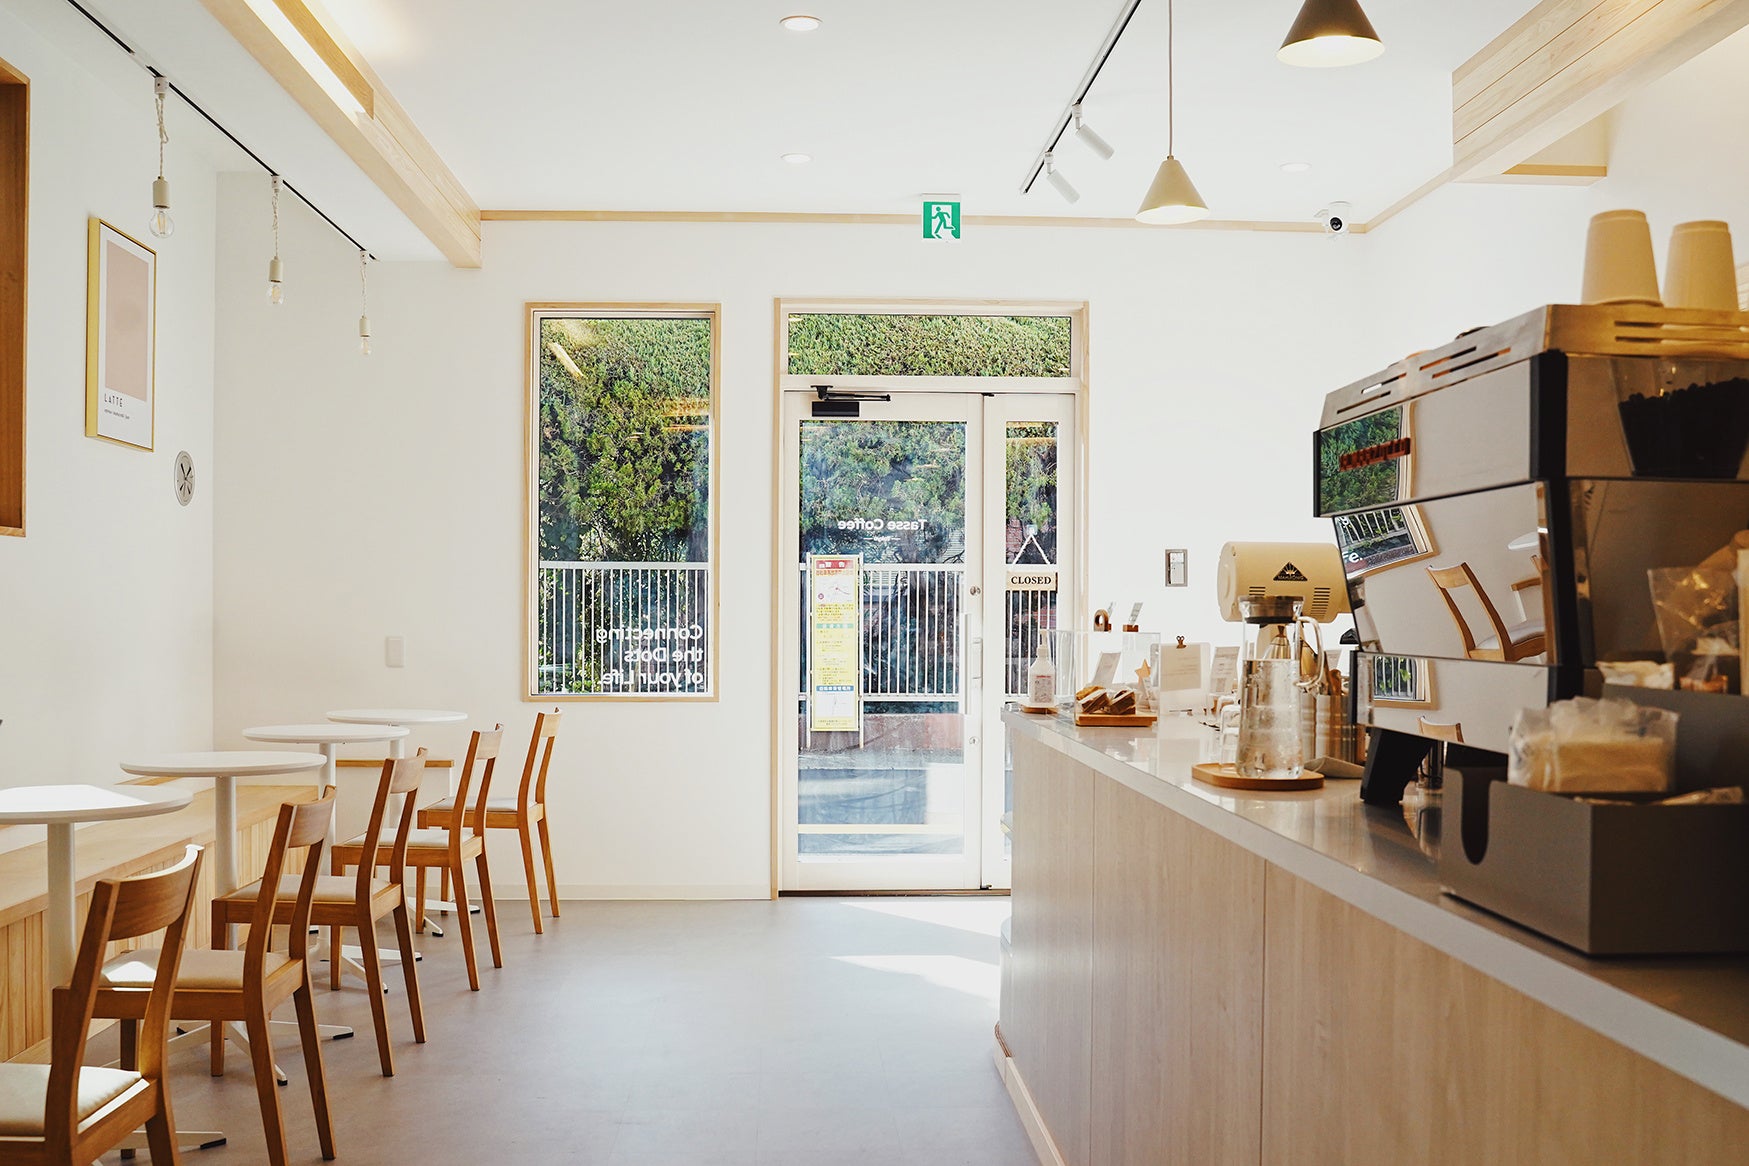 東京新宿にて新時代のコーヒー体験を提供するタッセコーヒーロースタリーがオープン